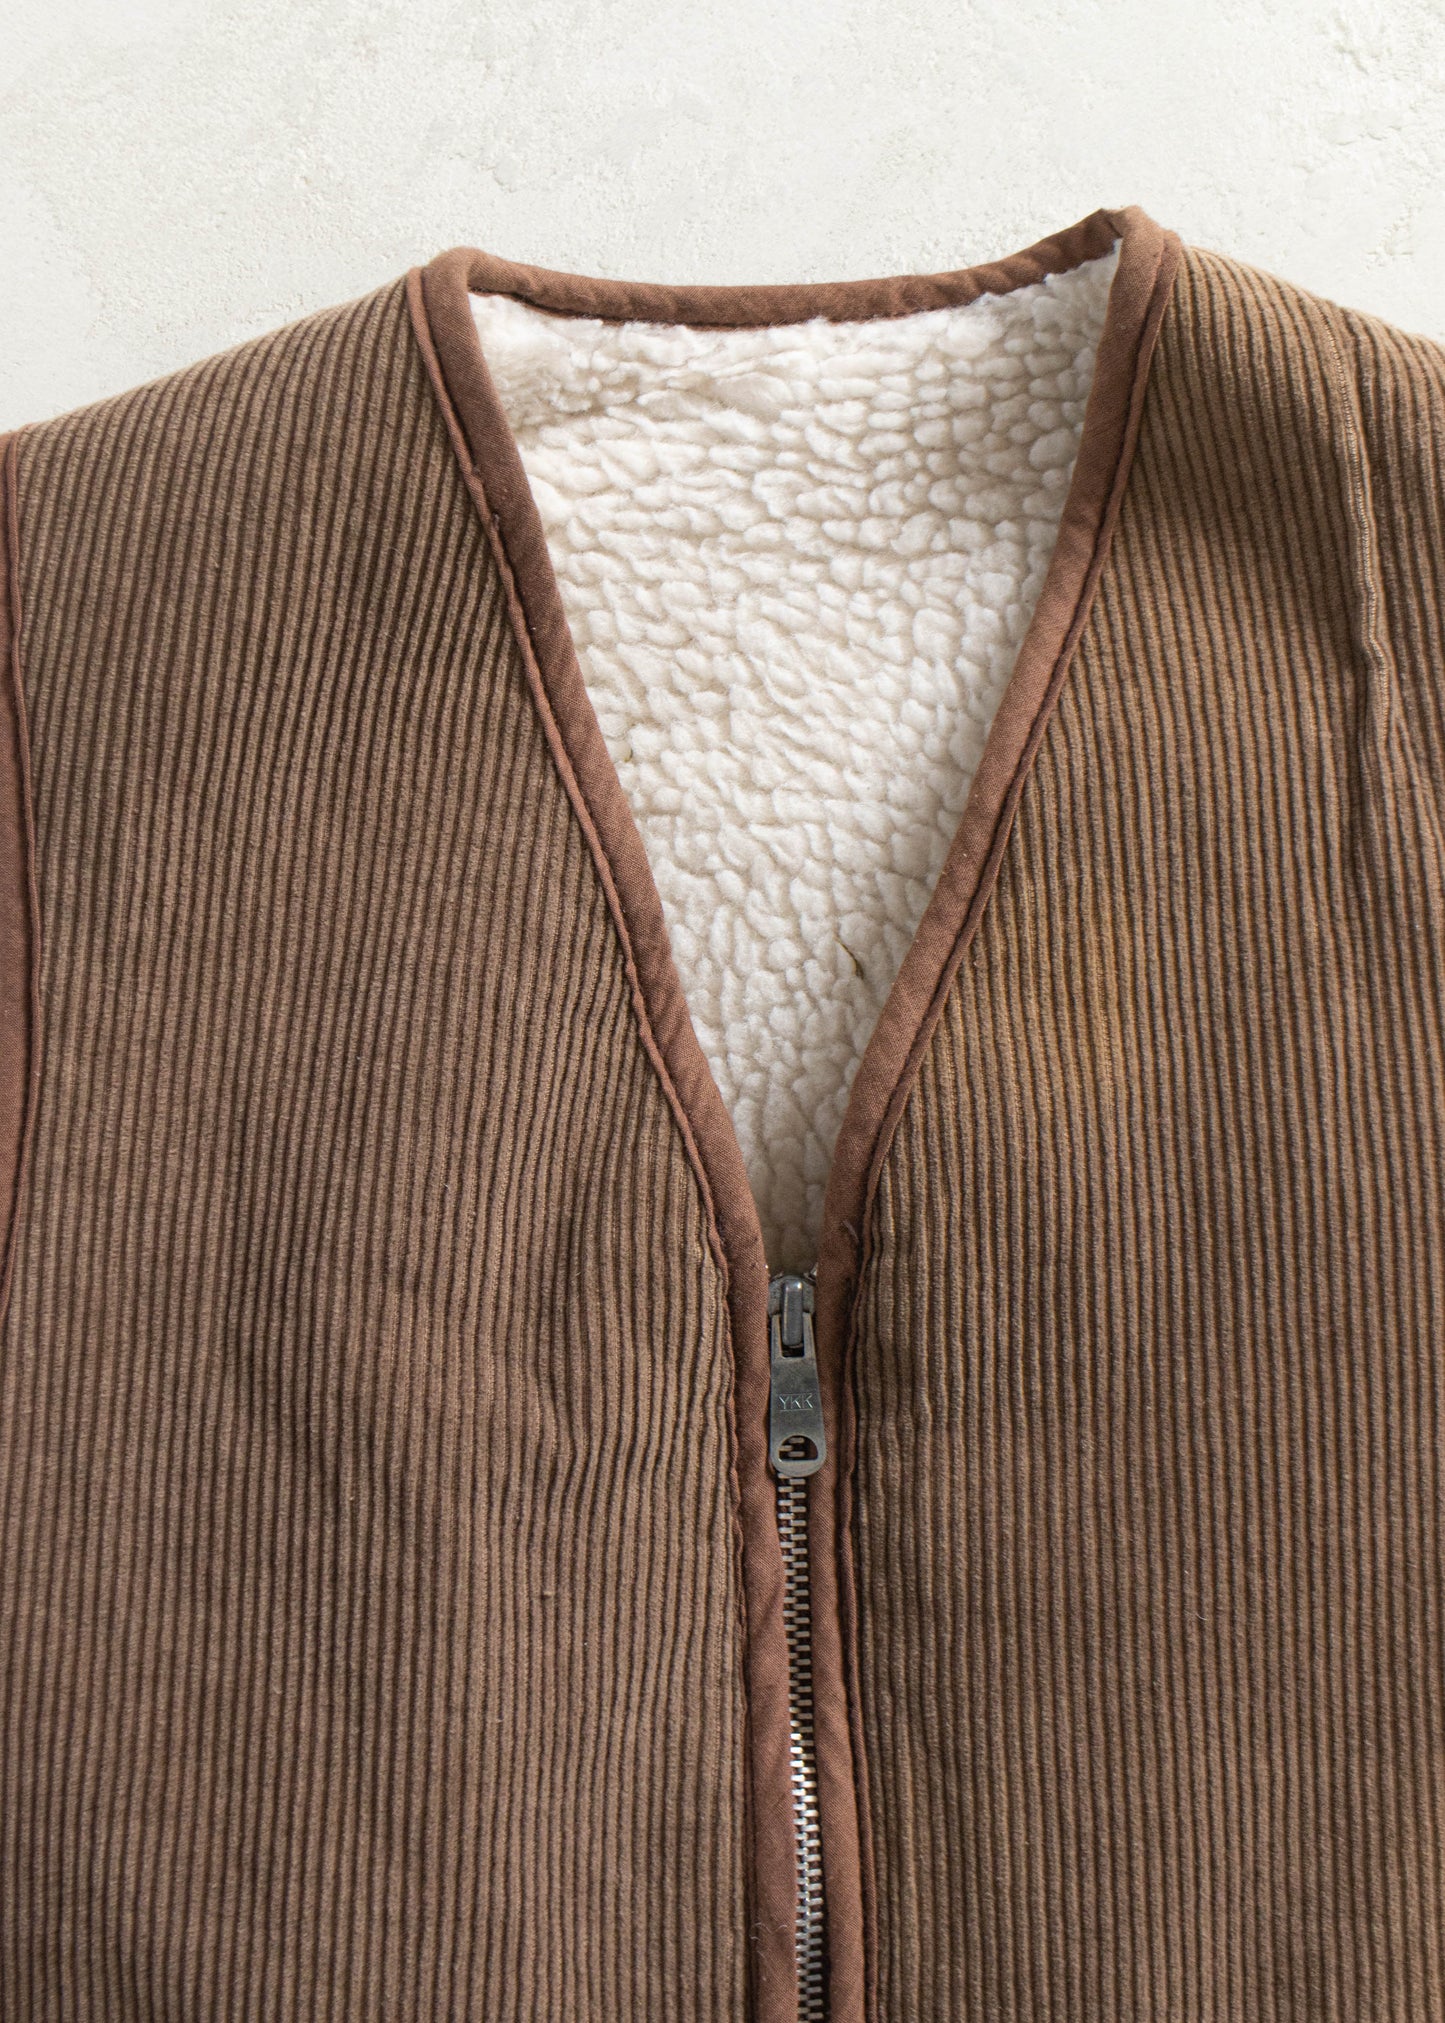 Vintage 1980s Sherpa Lined Corduroy Vest Size XS/S